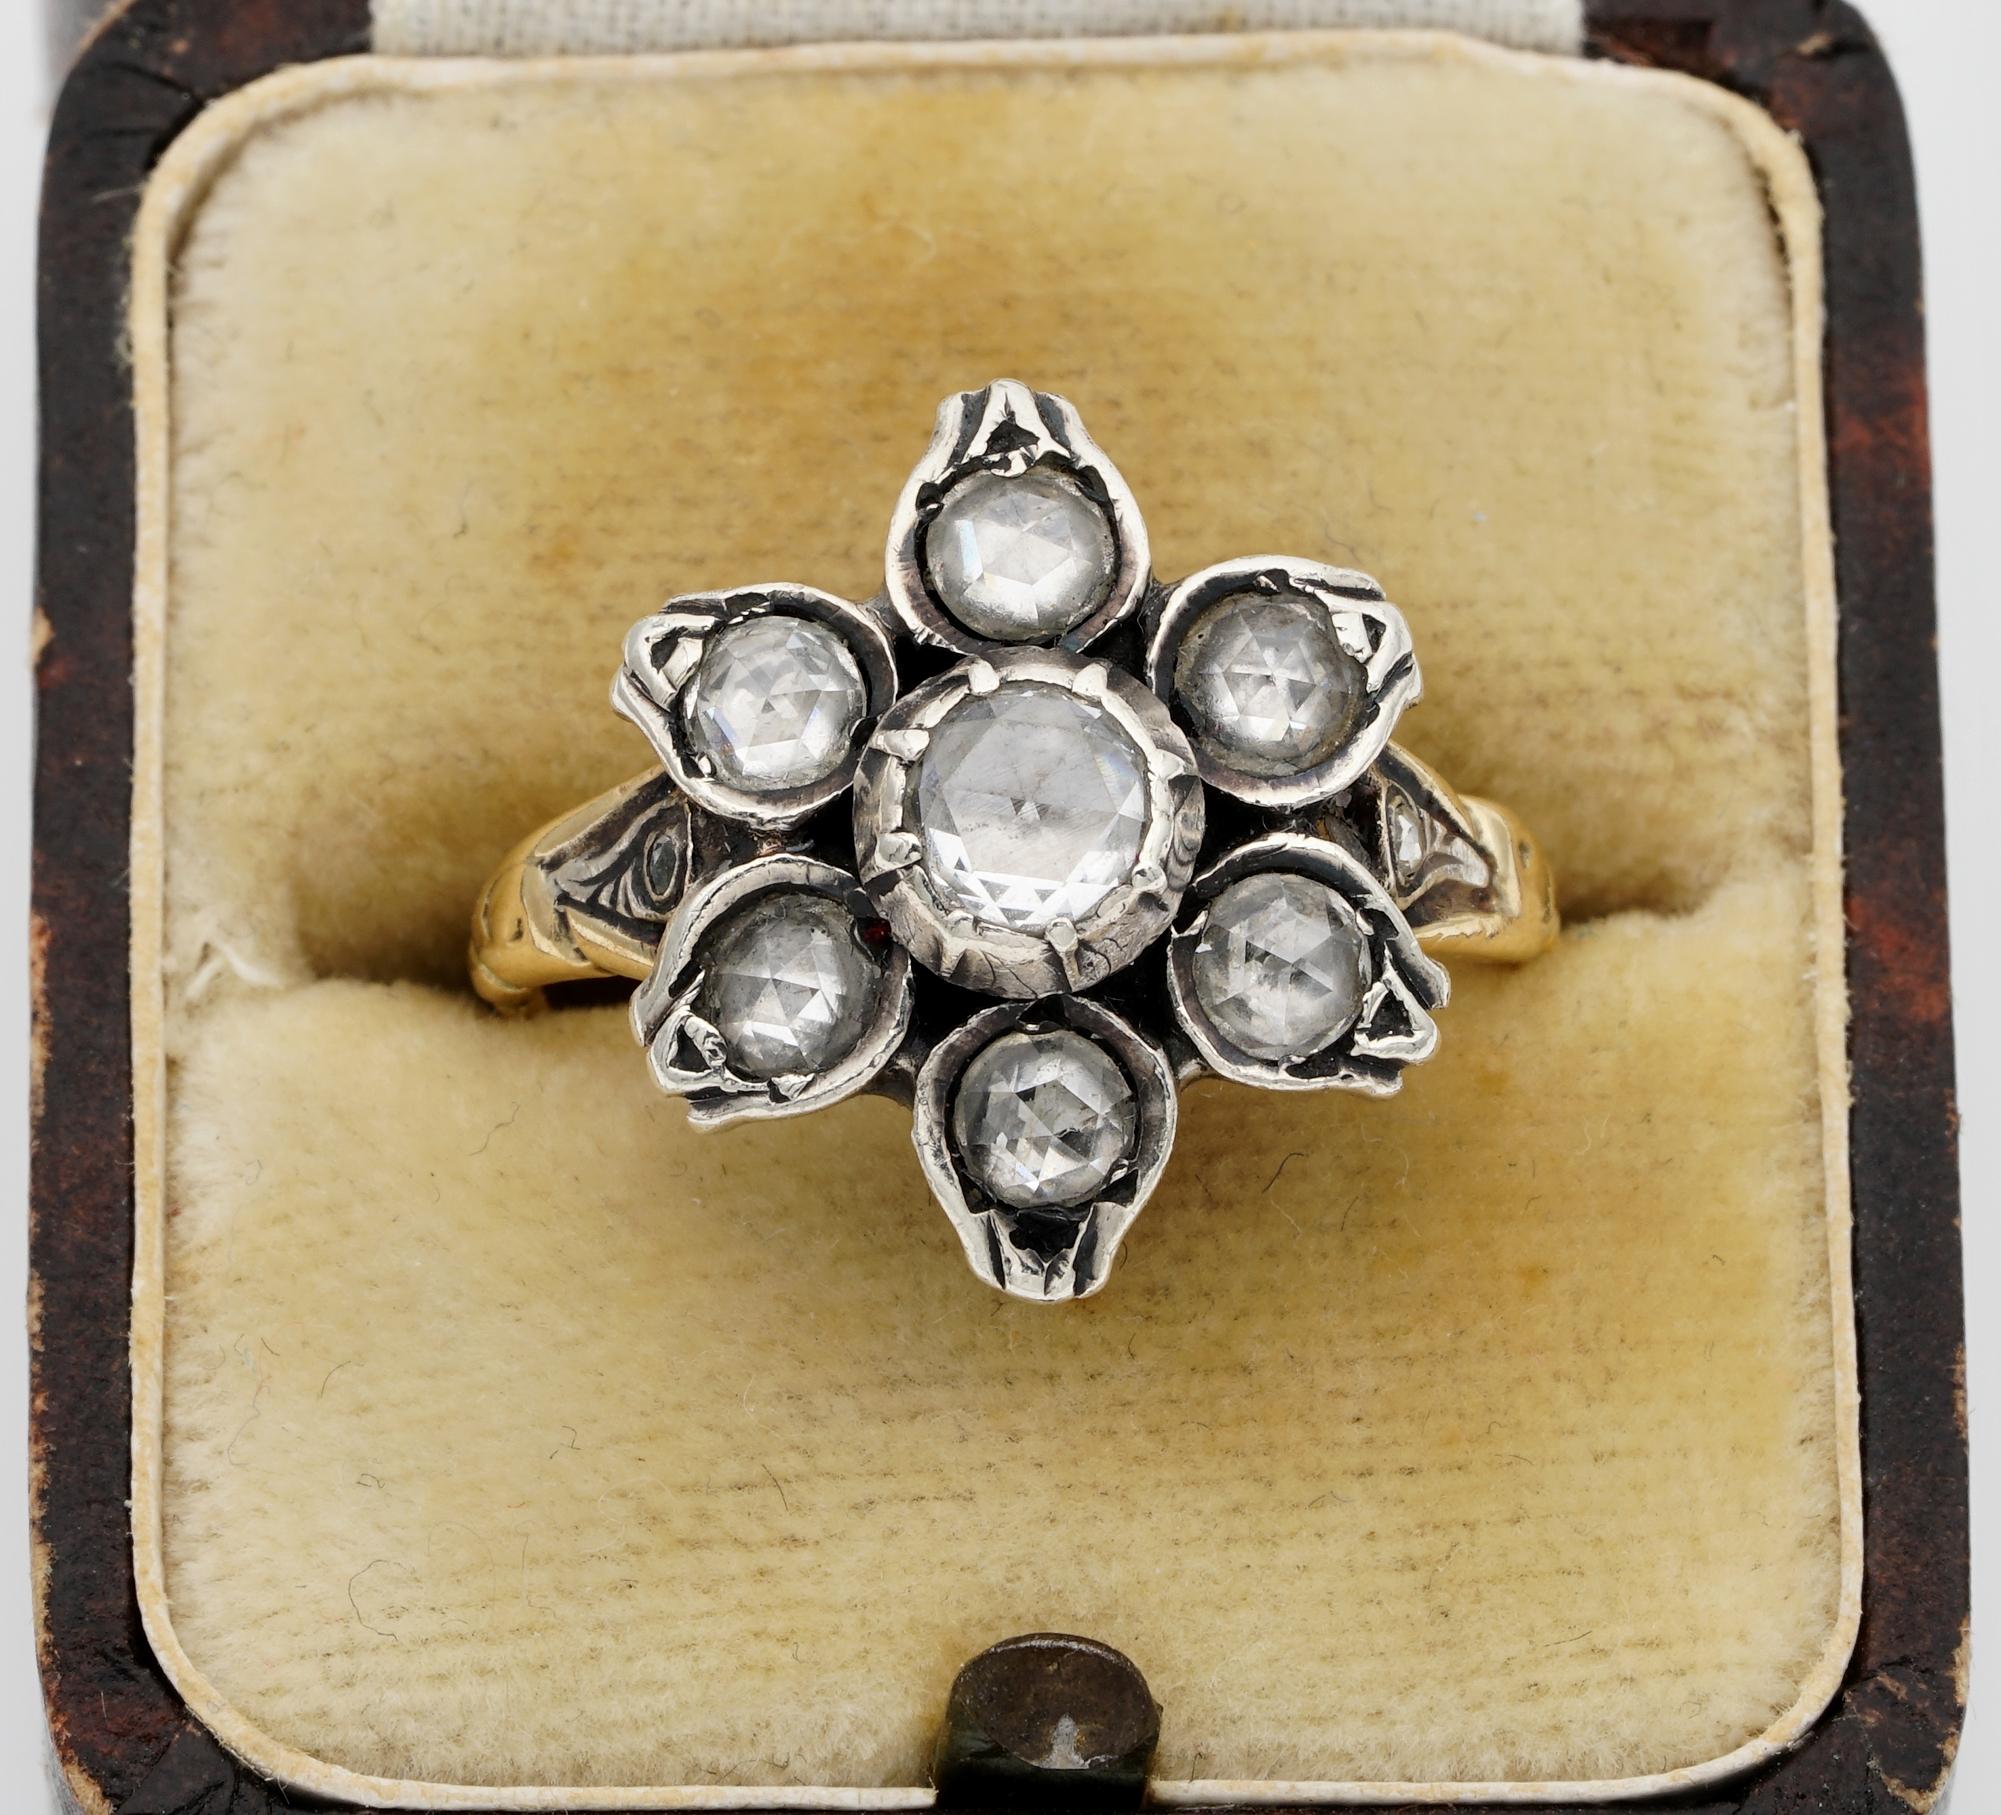 Diese wunderschöne viktorianische Periode Georgianischen Stil Diamond Ring ist 1900 ca
Handgefertigt aus massivem 18 Kt Gold mit Silberanteilen
Modelliert als süße Blume, wunderschön detailliert und verziert mit funkelnden Diamanten im